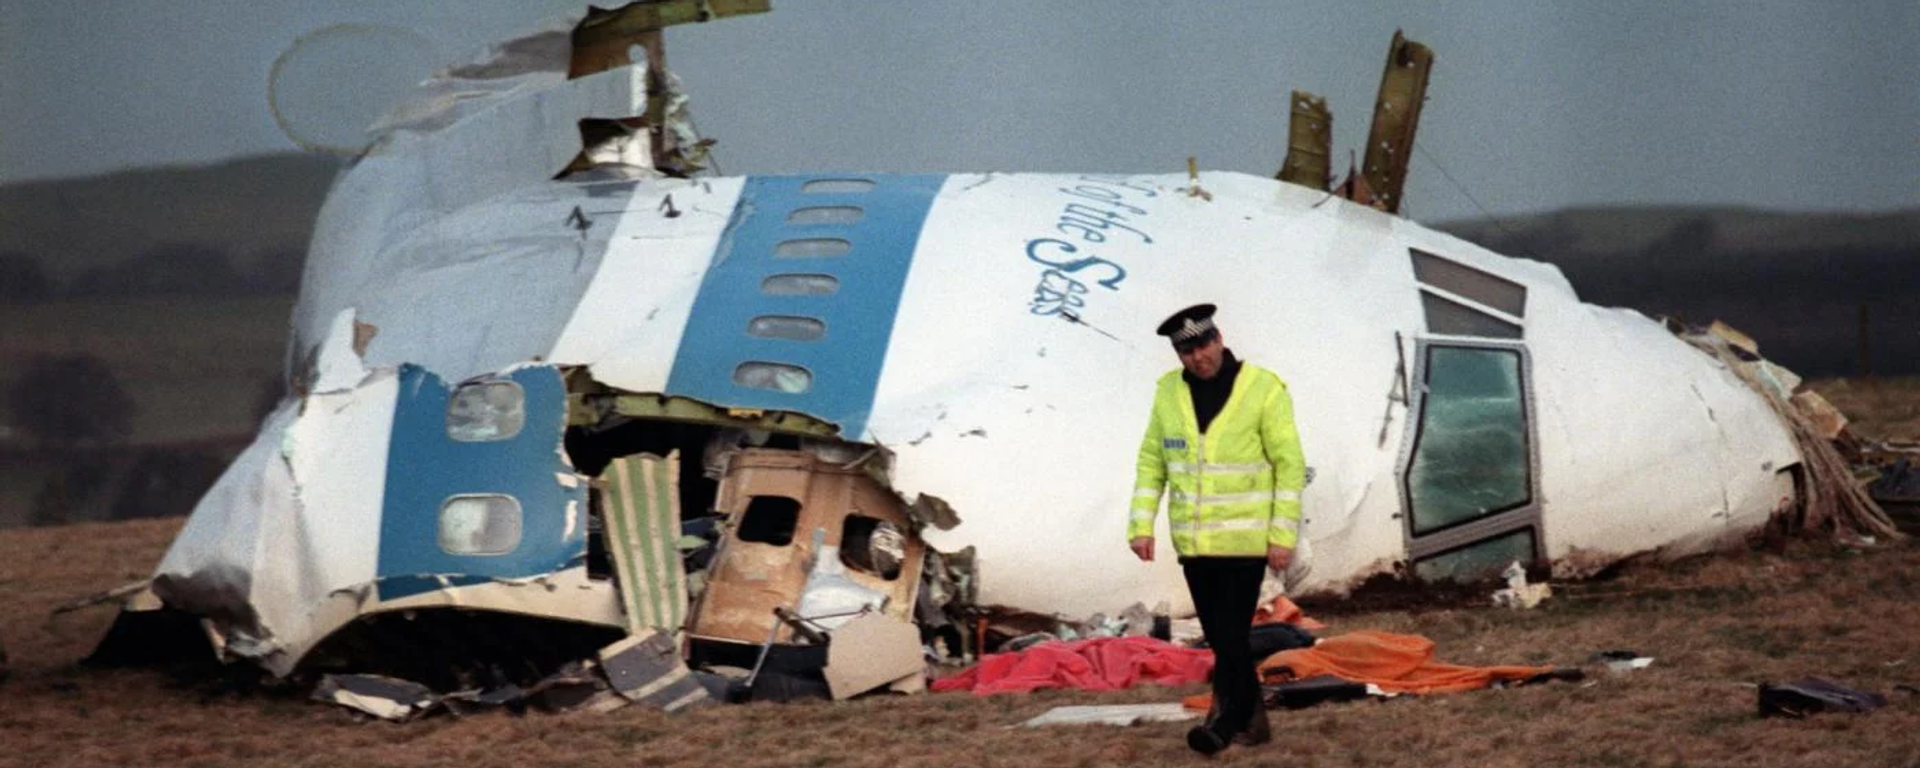 İskoç yetkililer, 34 yıl önce Lockerbie kasabası üzerinde Pan Am 103 sefer sayılı uçağın infilakına neden olan bombayı yapmakla suçlanan Libyalı Ebu Agila Muhammed Mesut'un ABD'de gözaltına alındığını duyurdu. - Sputnik Türkiye, 1920, 12.12.2022